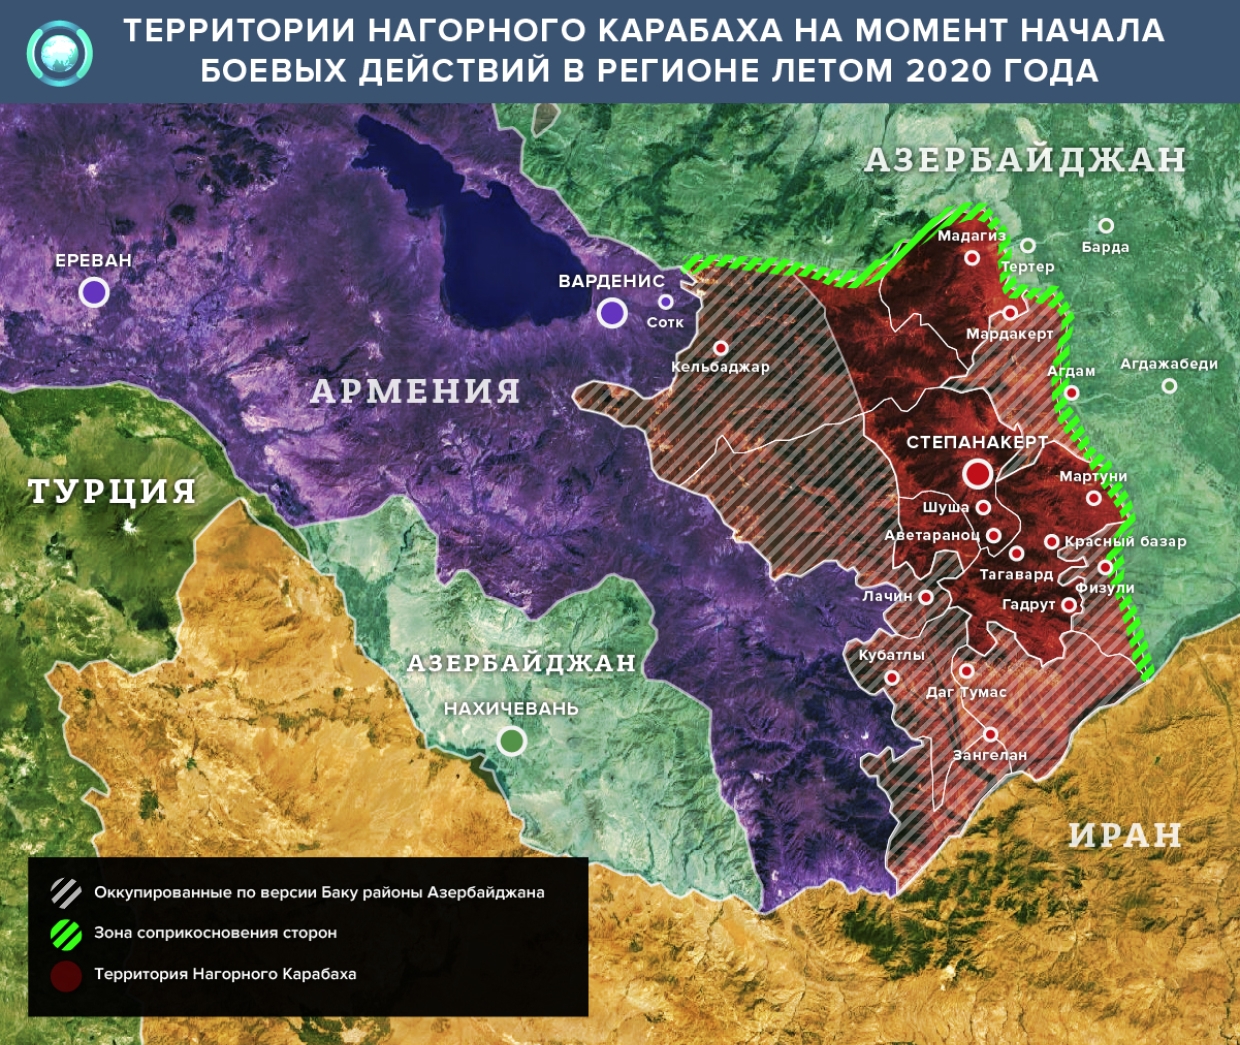 Карта армении и нагорного карабаха